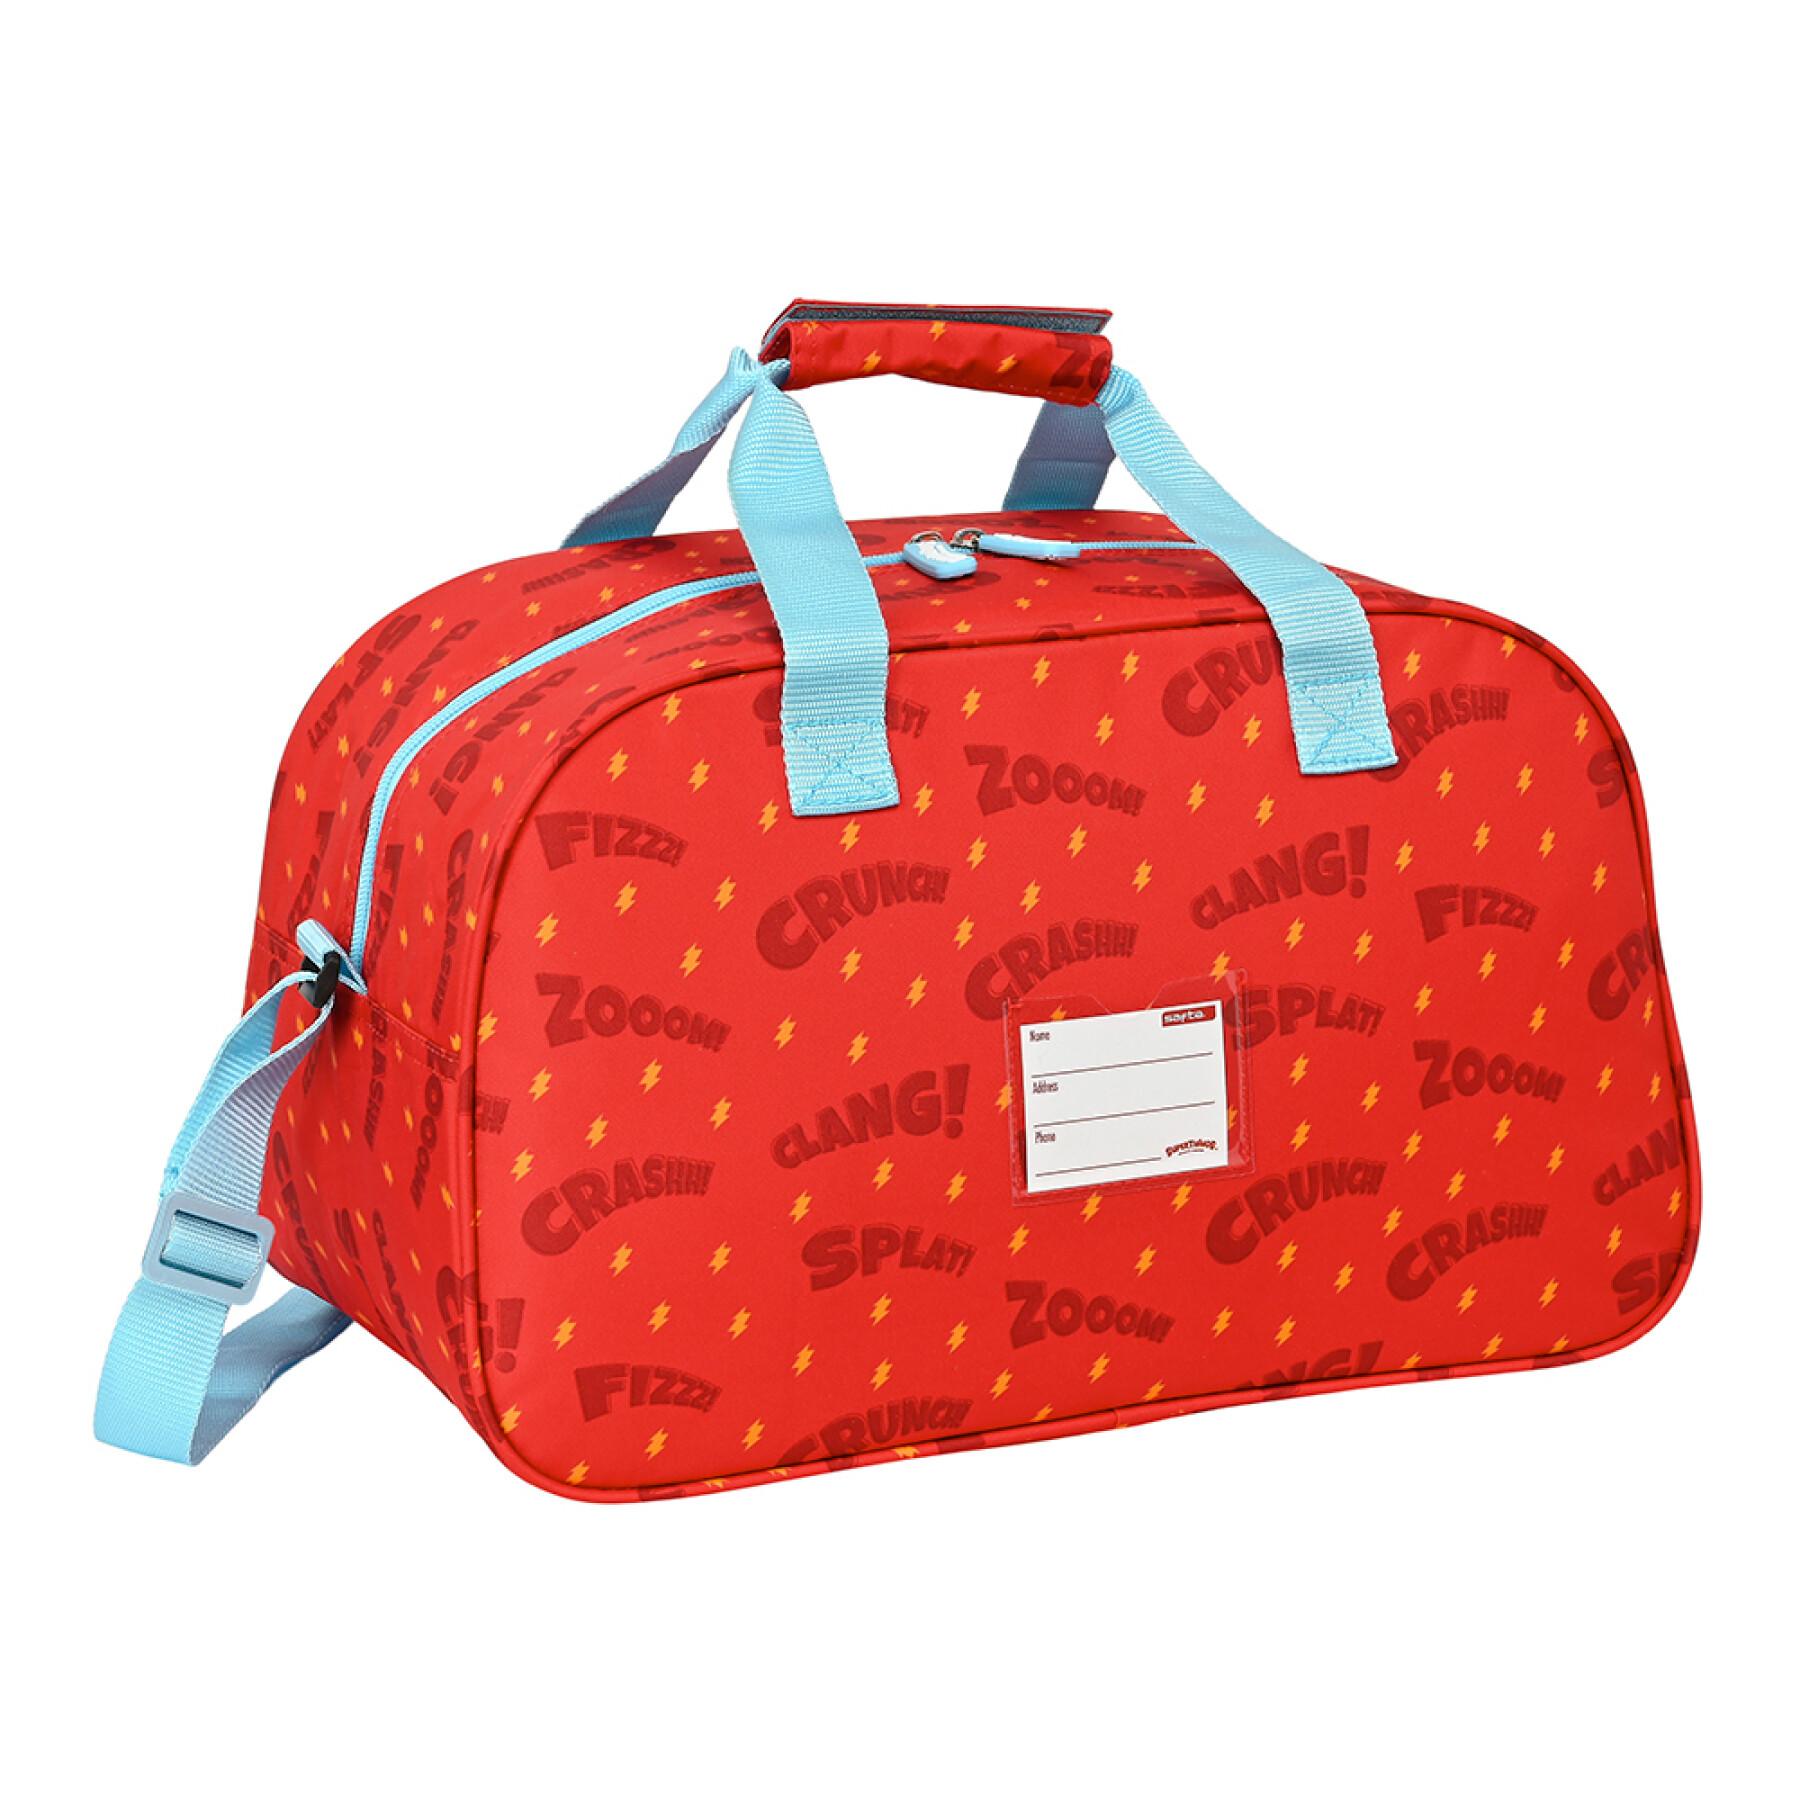 Sports and travel bag for children Safta Superthings